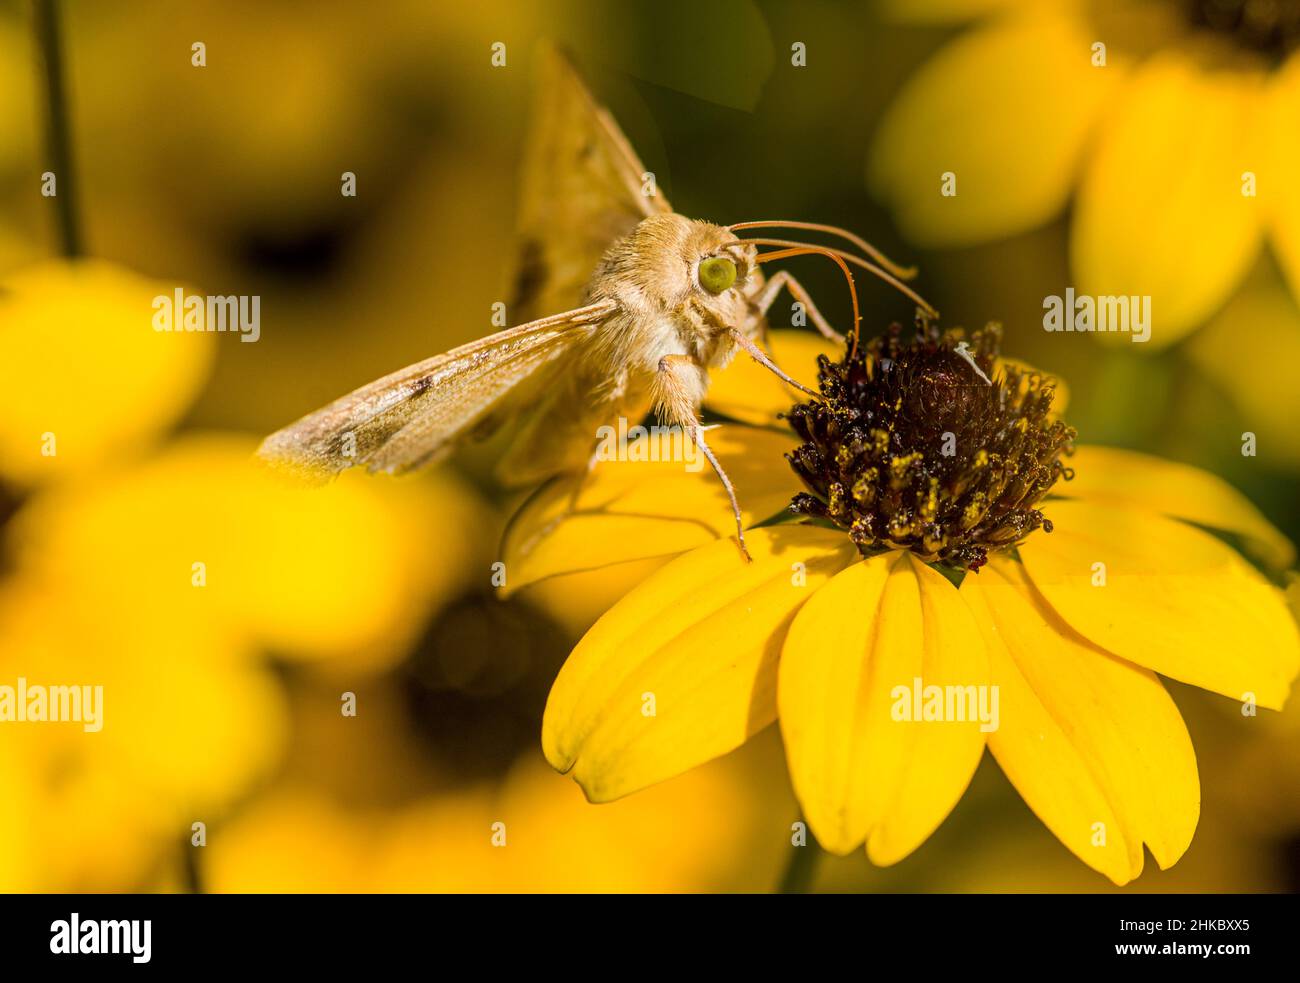 Una mariposa de ojos verdes en la flor amarilla grande Foto de stock